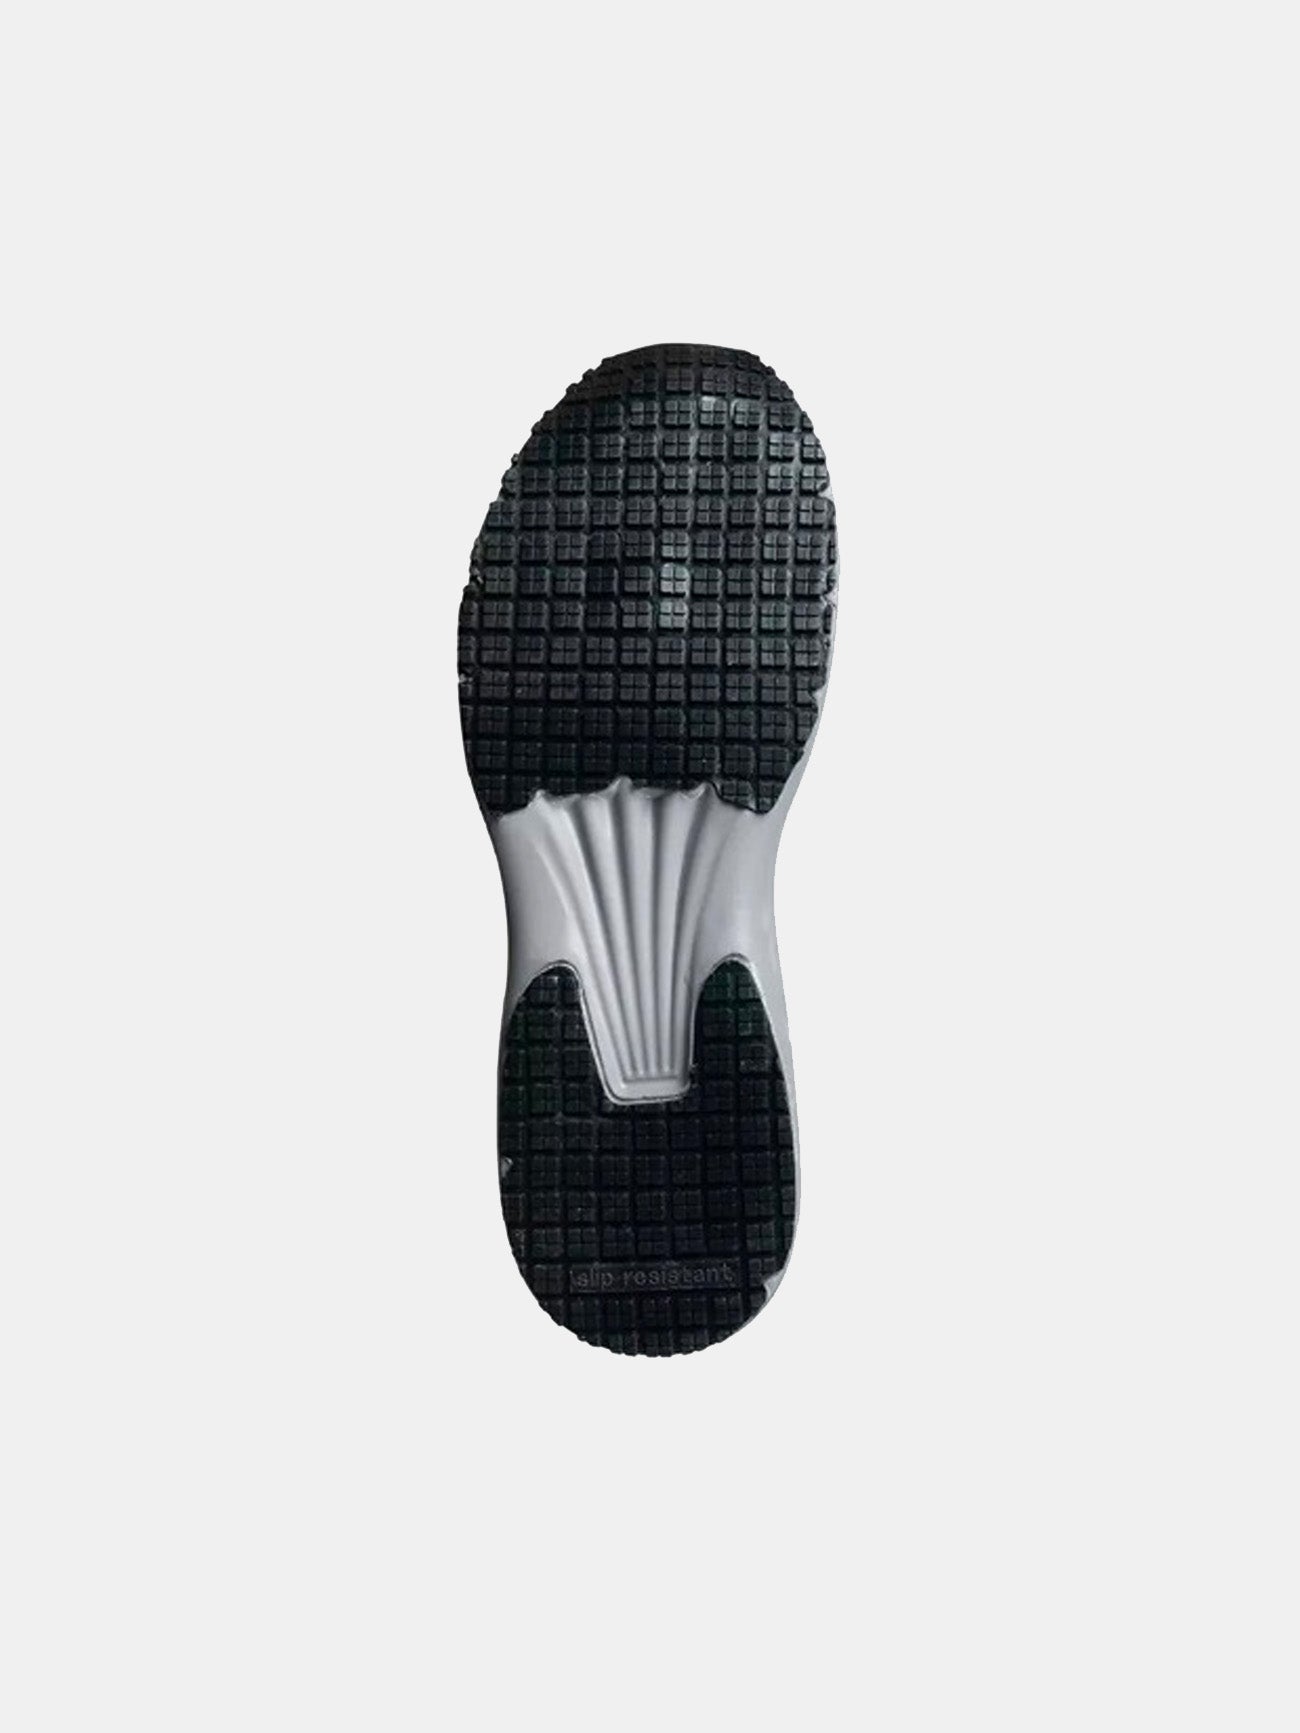 Safety Jogger Men's Balto S1 Shoes #color_Grey